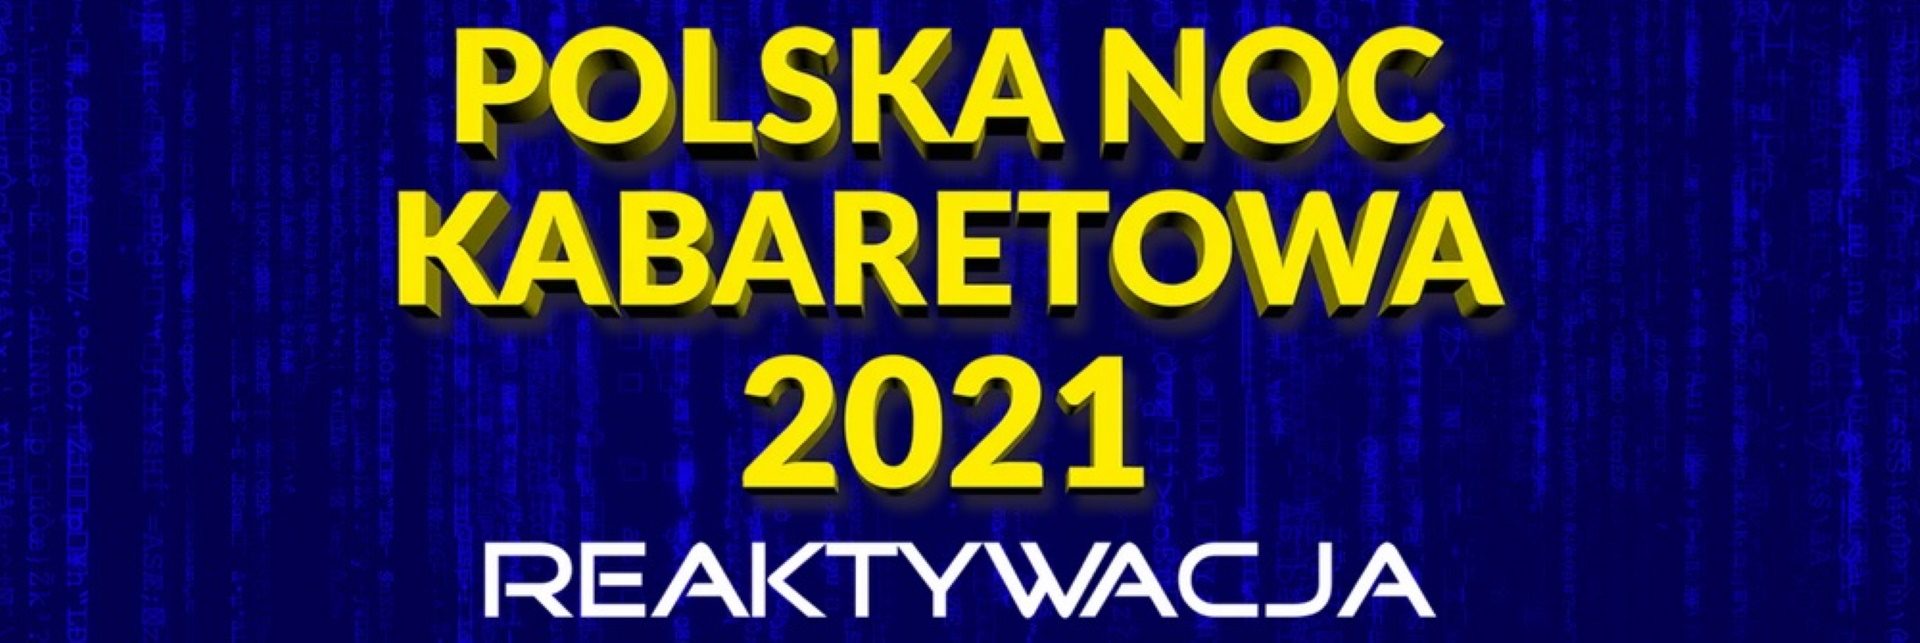 Plakat graficzny zapraszający do Olsztyna i Ostródy na Polską Noc Kabaretową – Reaktywacja 2021. Na plakacie napisy. 